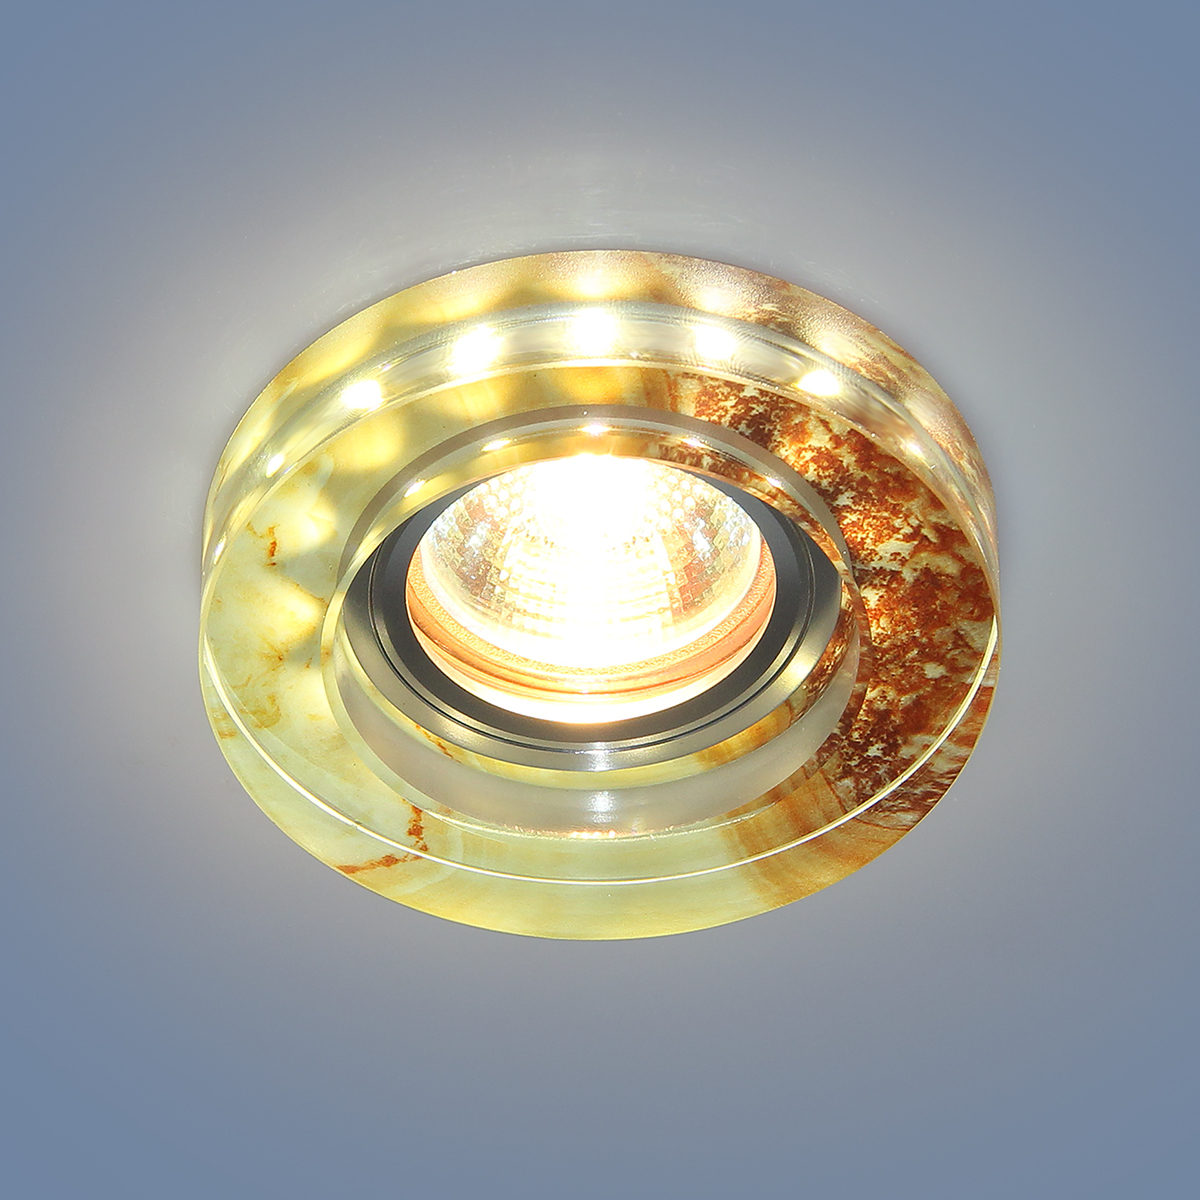 Точечный светильник со светодиодами 2190 MR16 YL желто-терракотовый